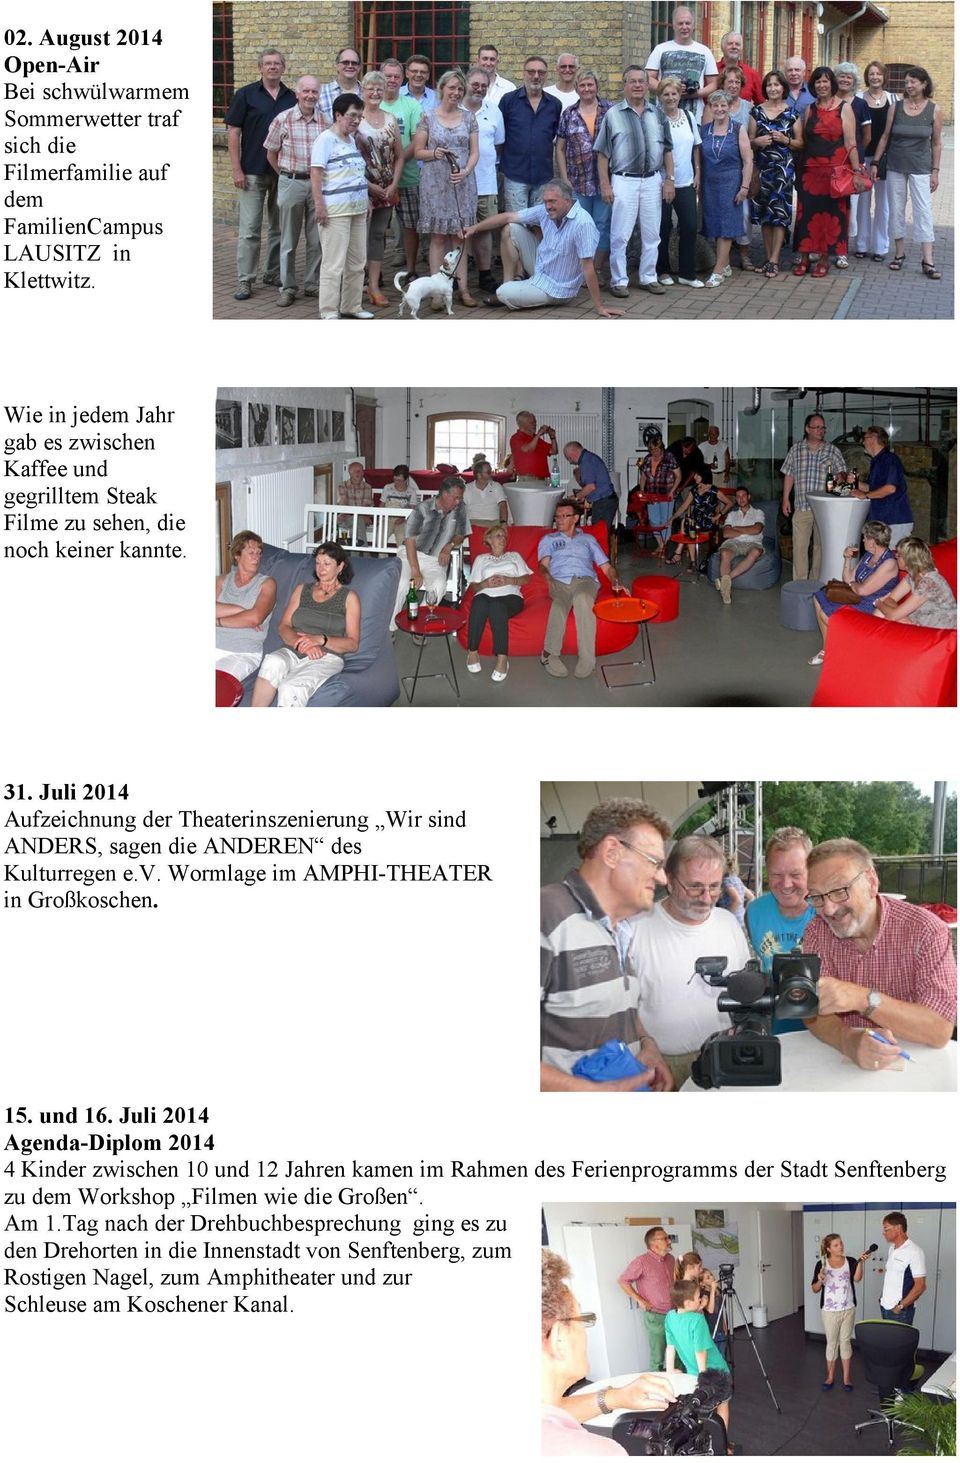 Juli 2014 Aufzeichnung der Theaterinszenierung Wir sind ANDERS, sagen die ANDEREN des Kulturregen e.v. Wormlage im AMPHI-THEATER in Großkoschen. 15. und 16.